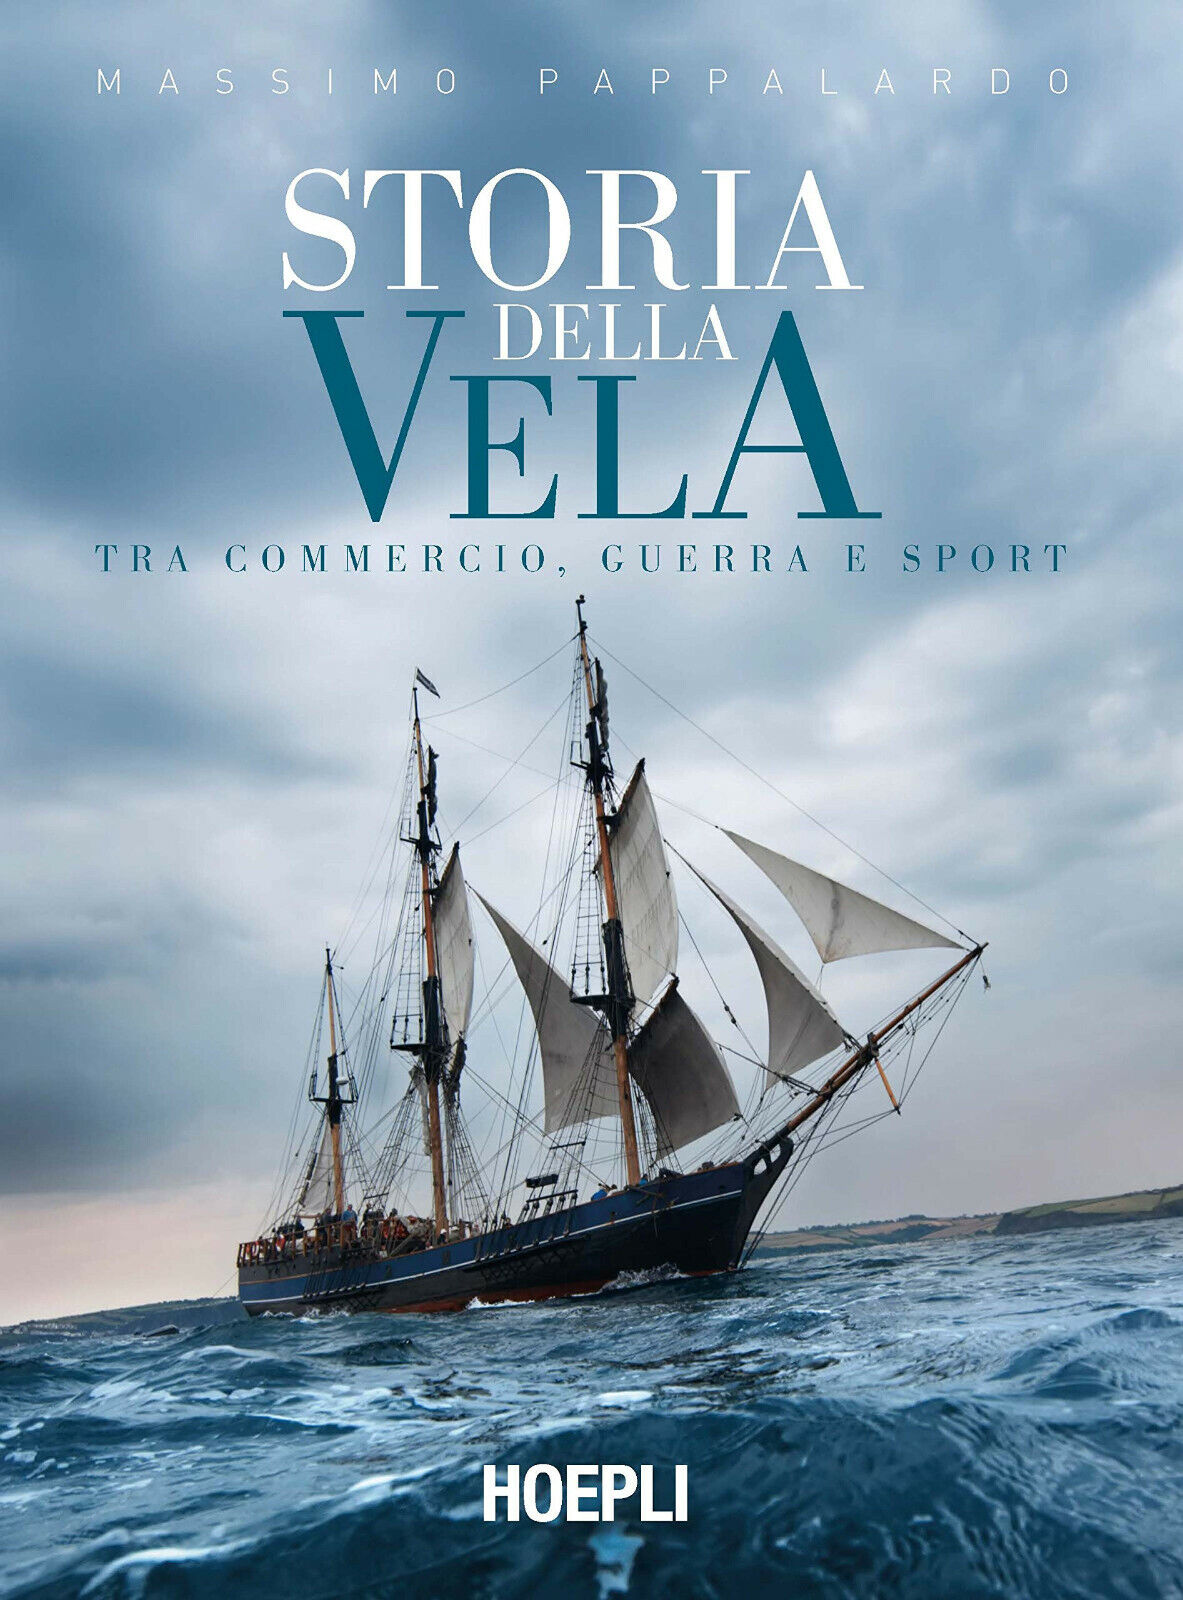 Storia della vela - Massimo Pappalardo - hoepli, 2019